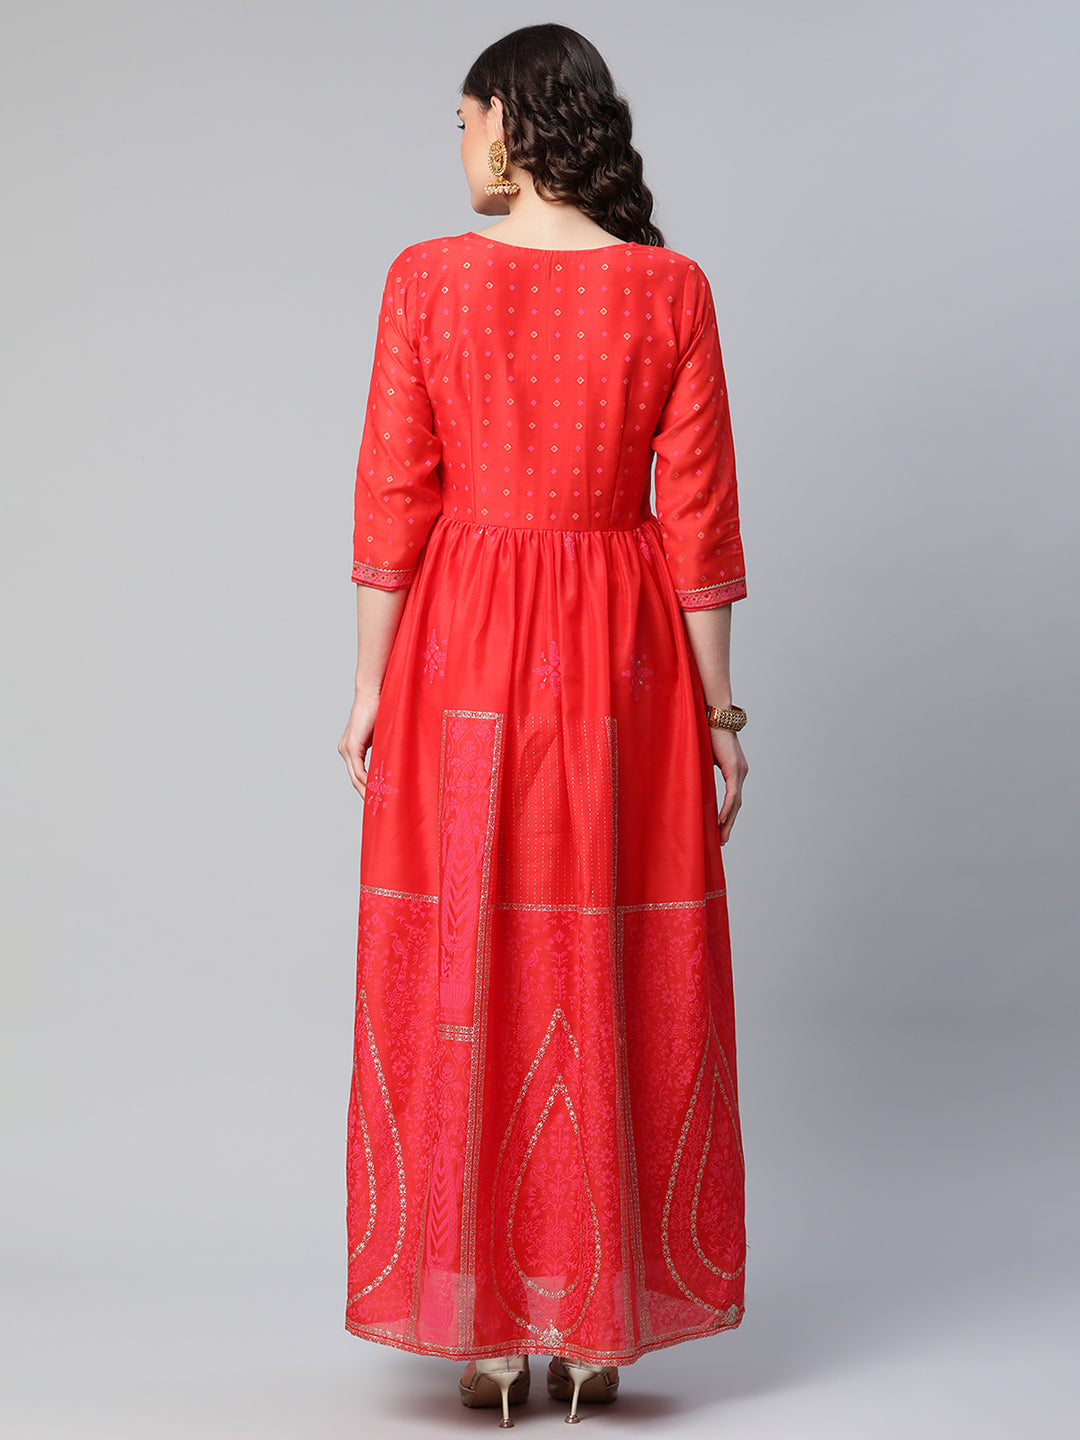 Women's Red Chanderi Khari Printed Dress - Ahalyaa